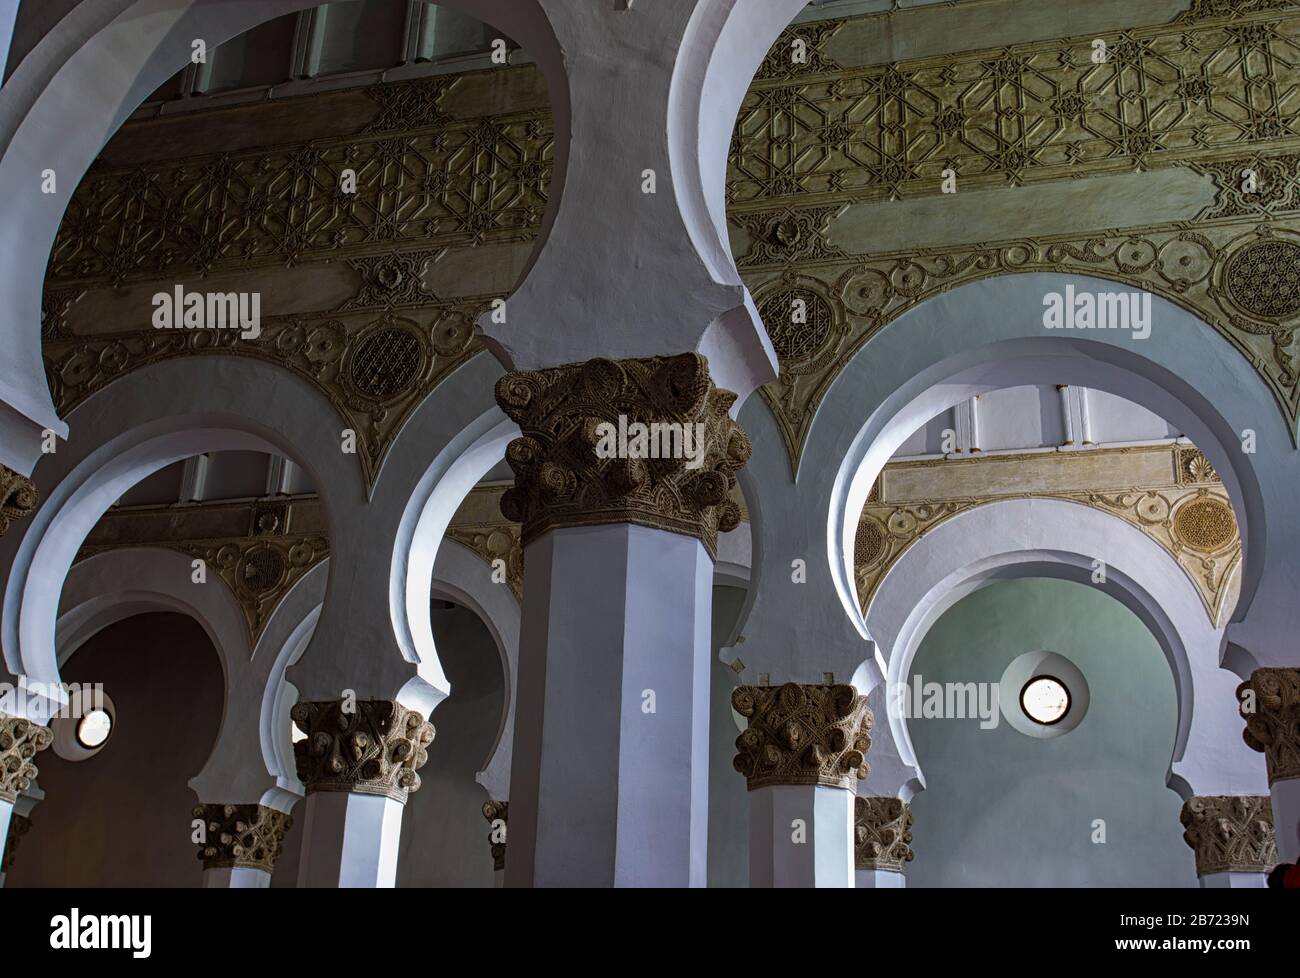 Archi Mudejar all'interno della sinagoga di Santa Maria la Blanca a Toledo, Spagna. La sinagoga risale al 13 ° secolo. Foto Stock